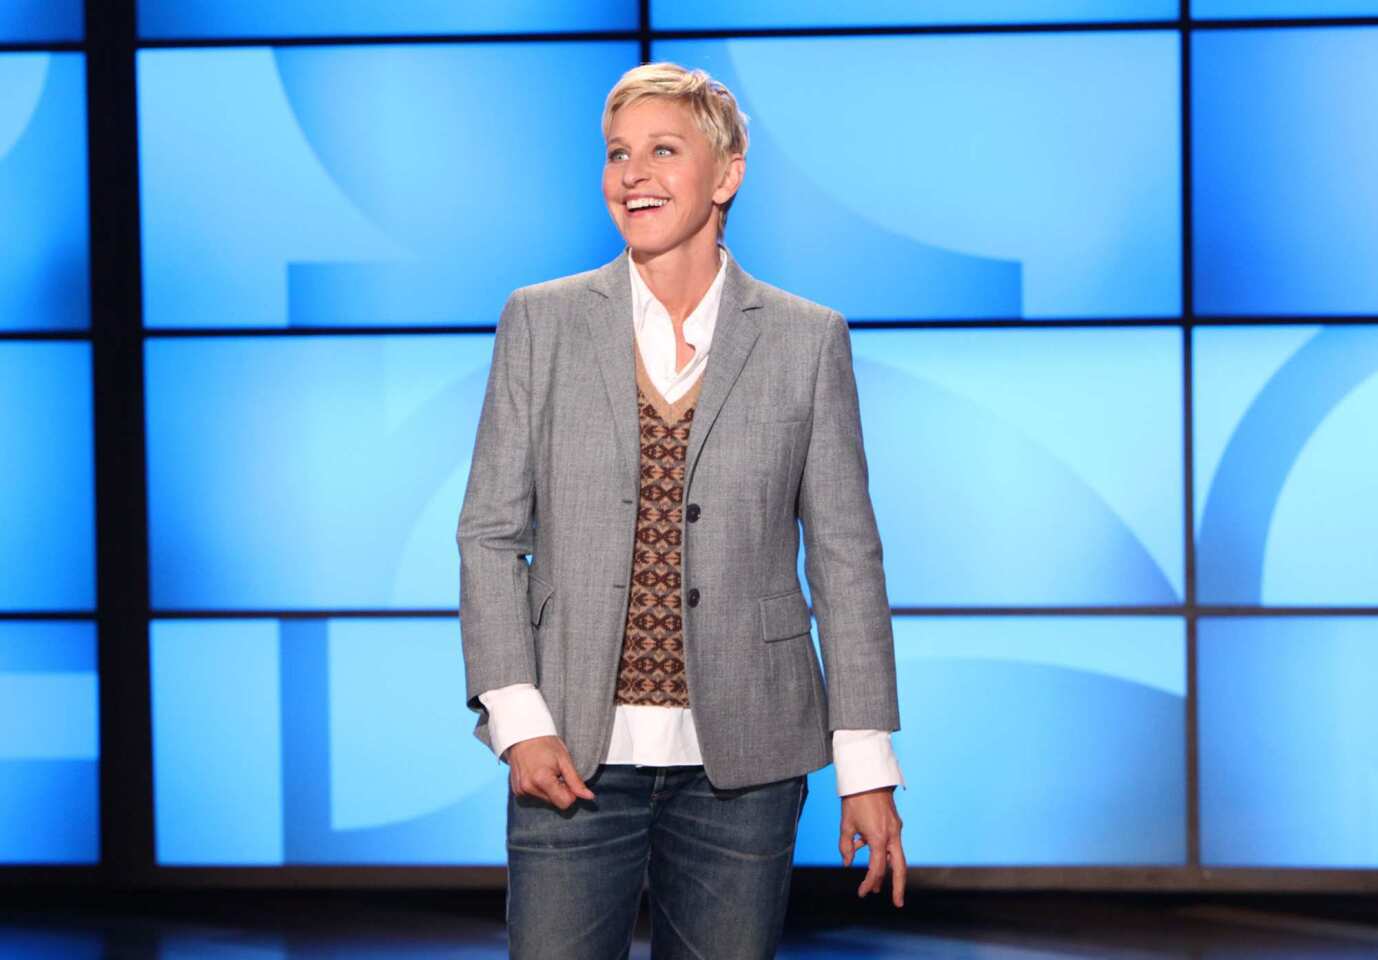 Ellen DeGeneres' winning smile